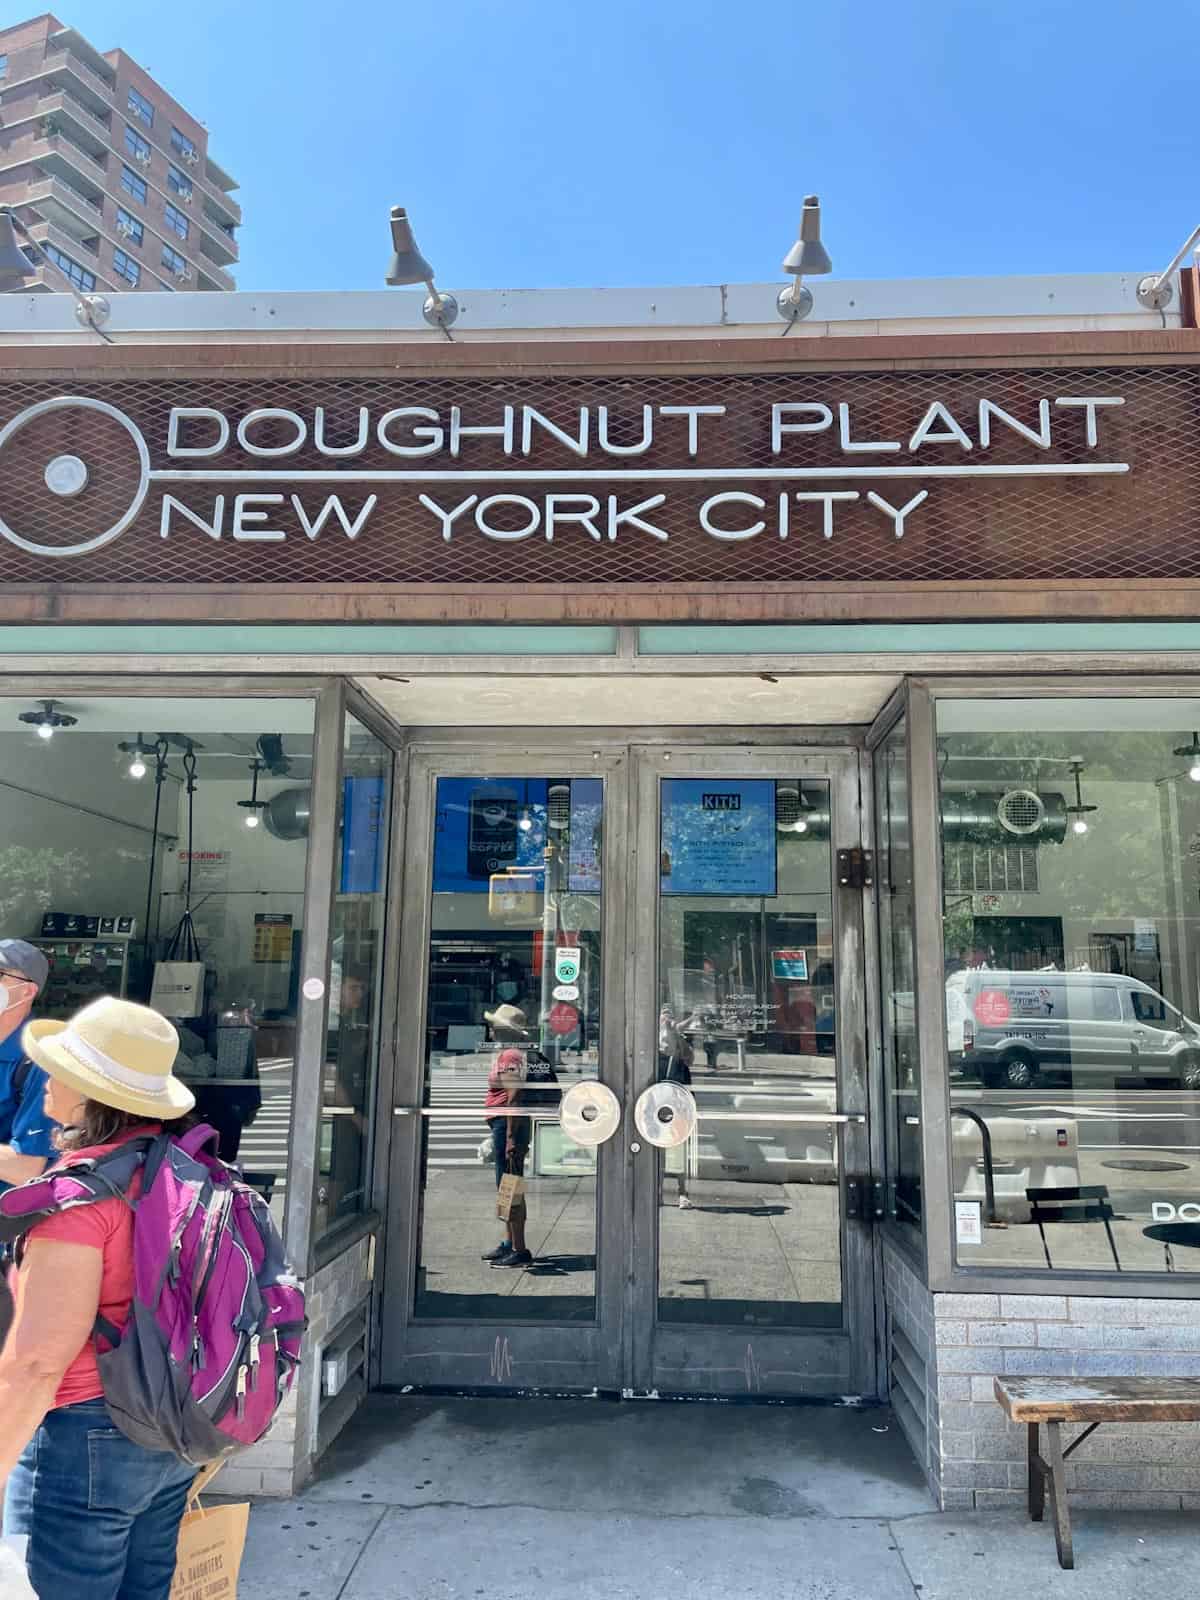 Doughnut Plant NYC building exterior.